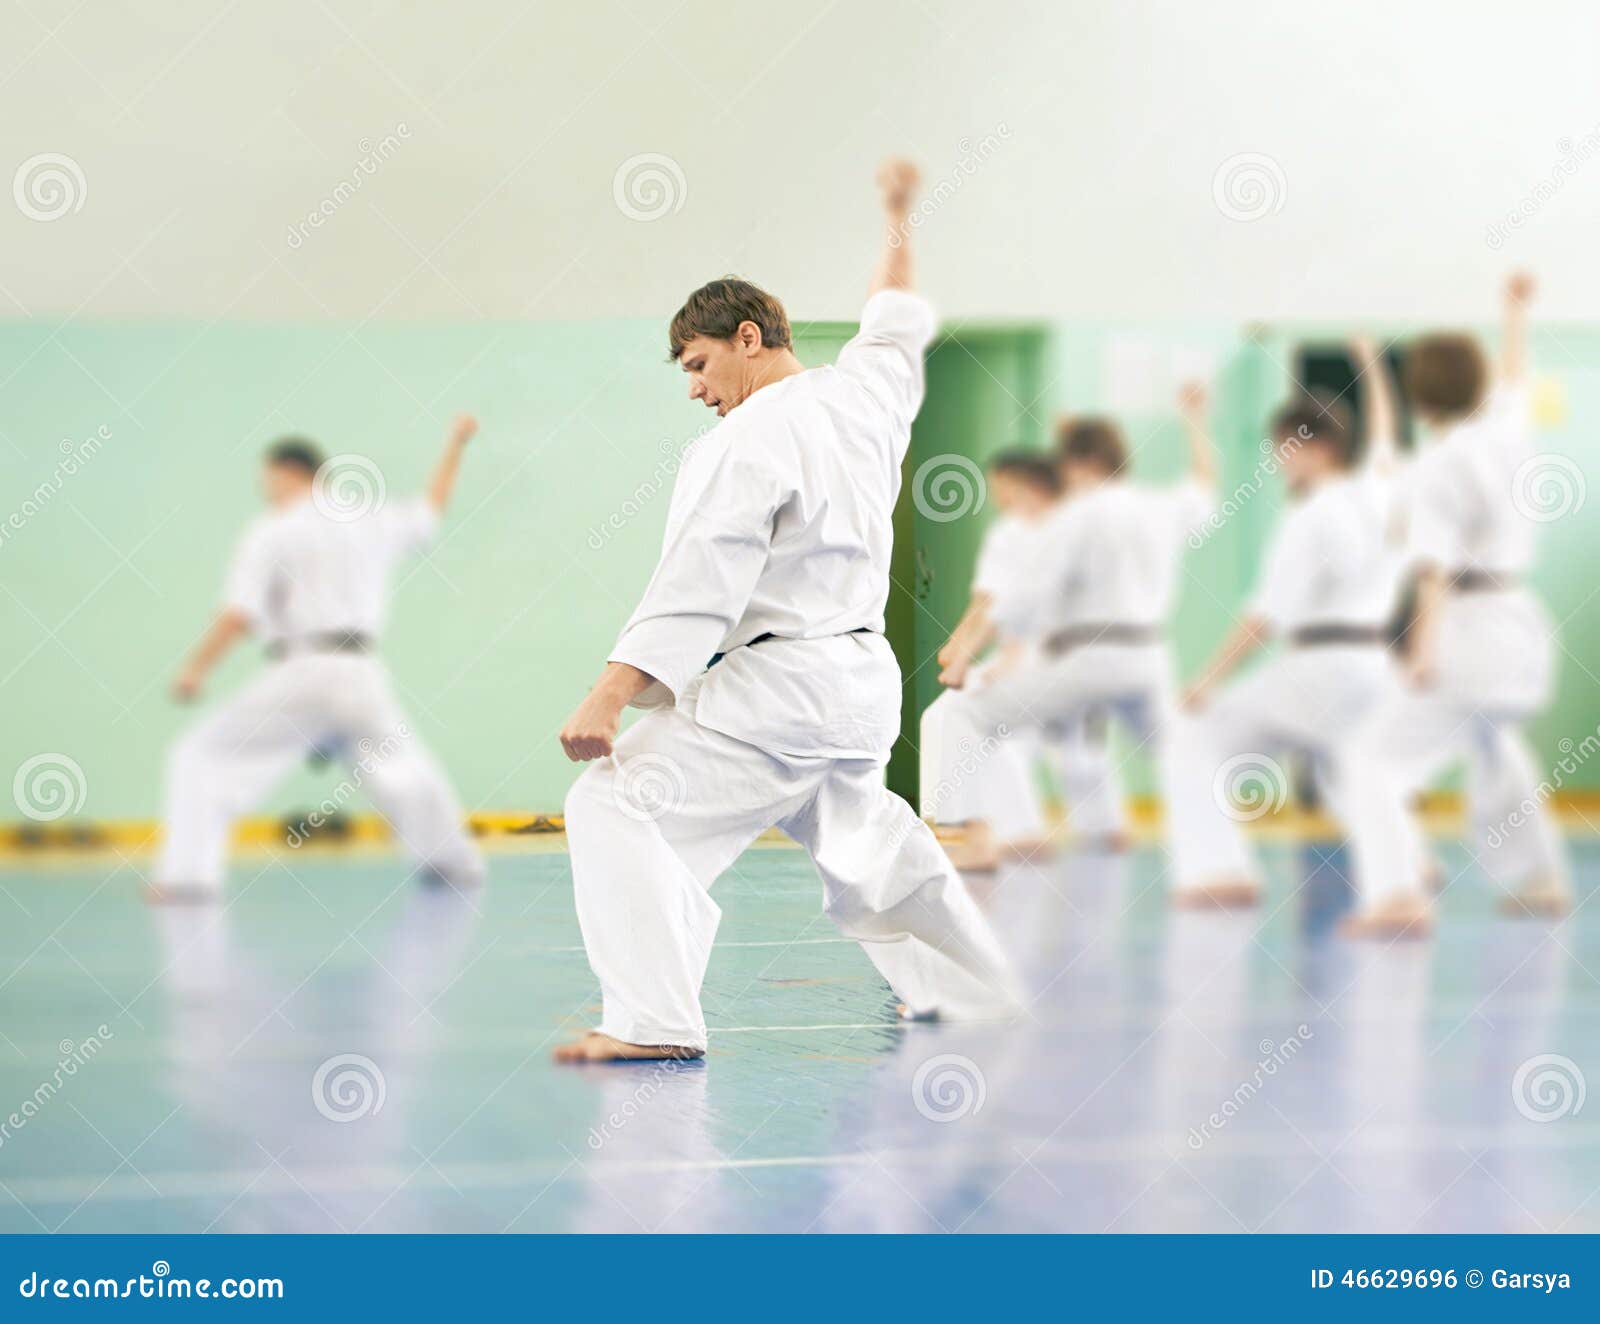 Частный урок каратэ. Урок в каоат уроки по каратэ. Фото уроки карате. Школа карате для женщин.